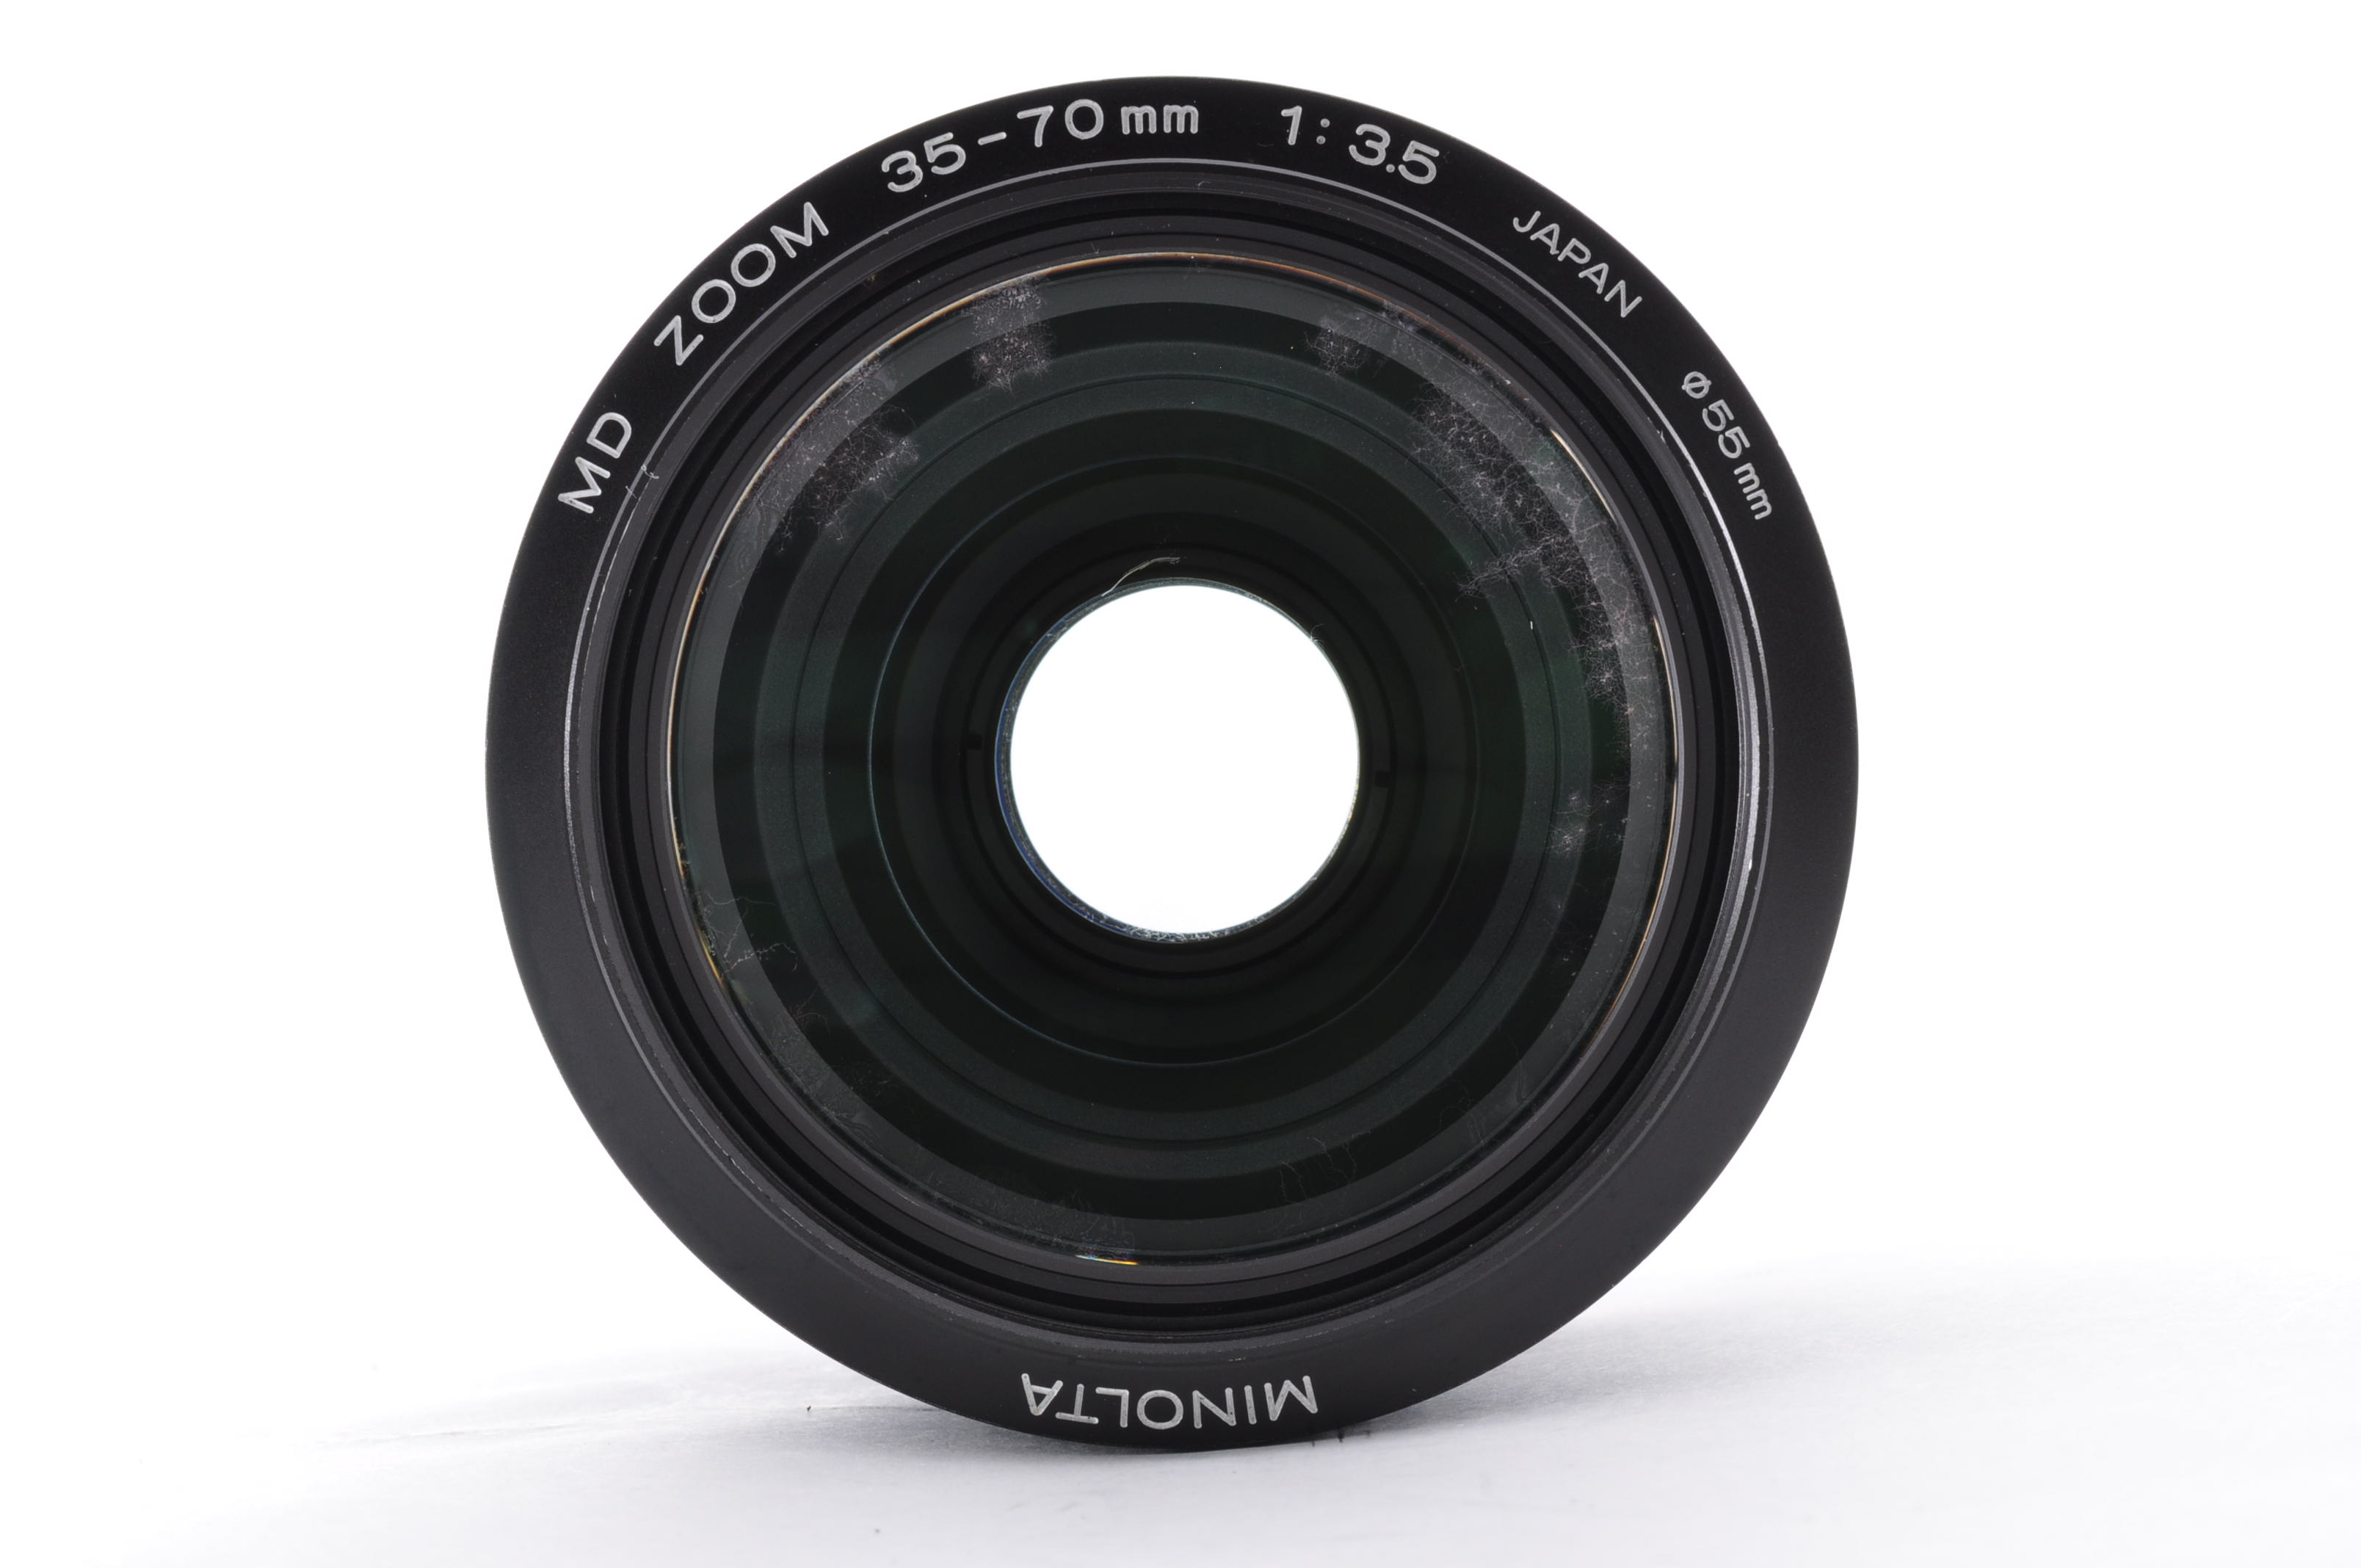 MINOLTA SRT 101 SLR 35mm Film Camera w/MD 35-70mm F3.5 Lens [Excellent] Japan img16